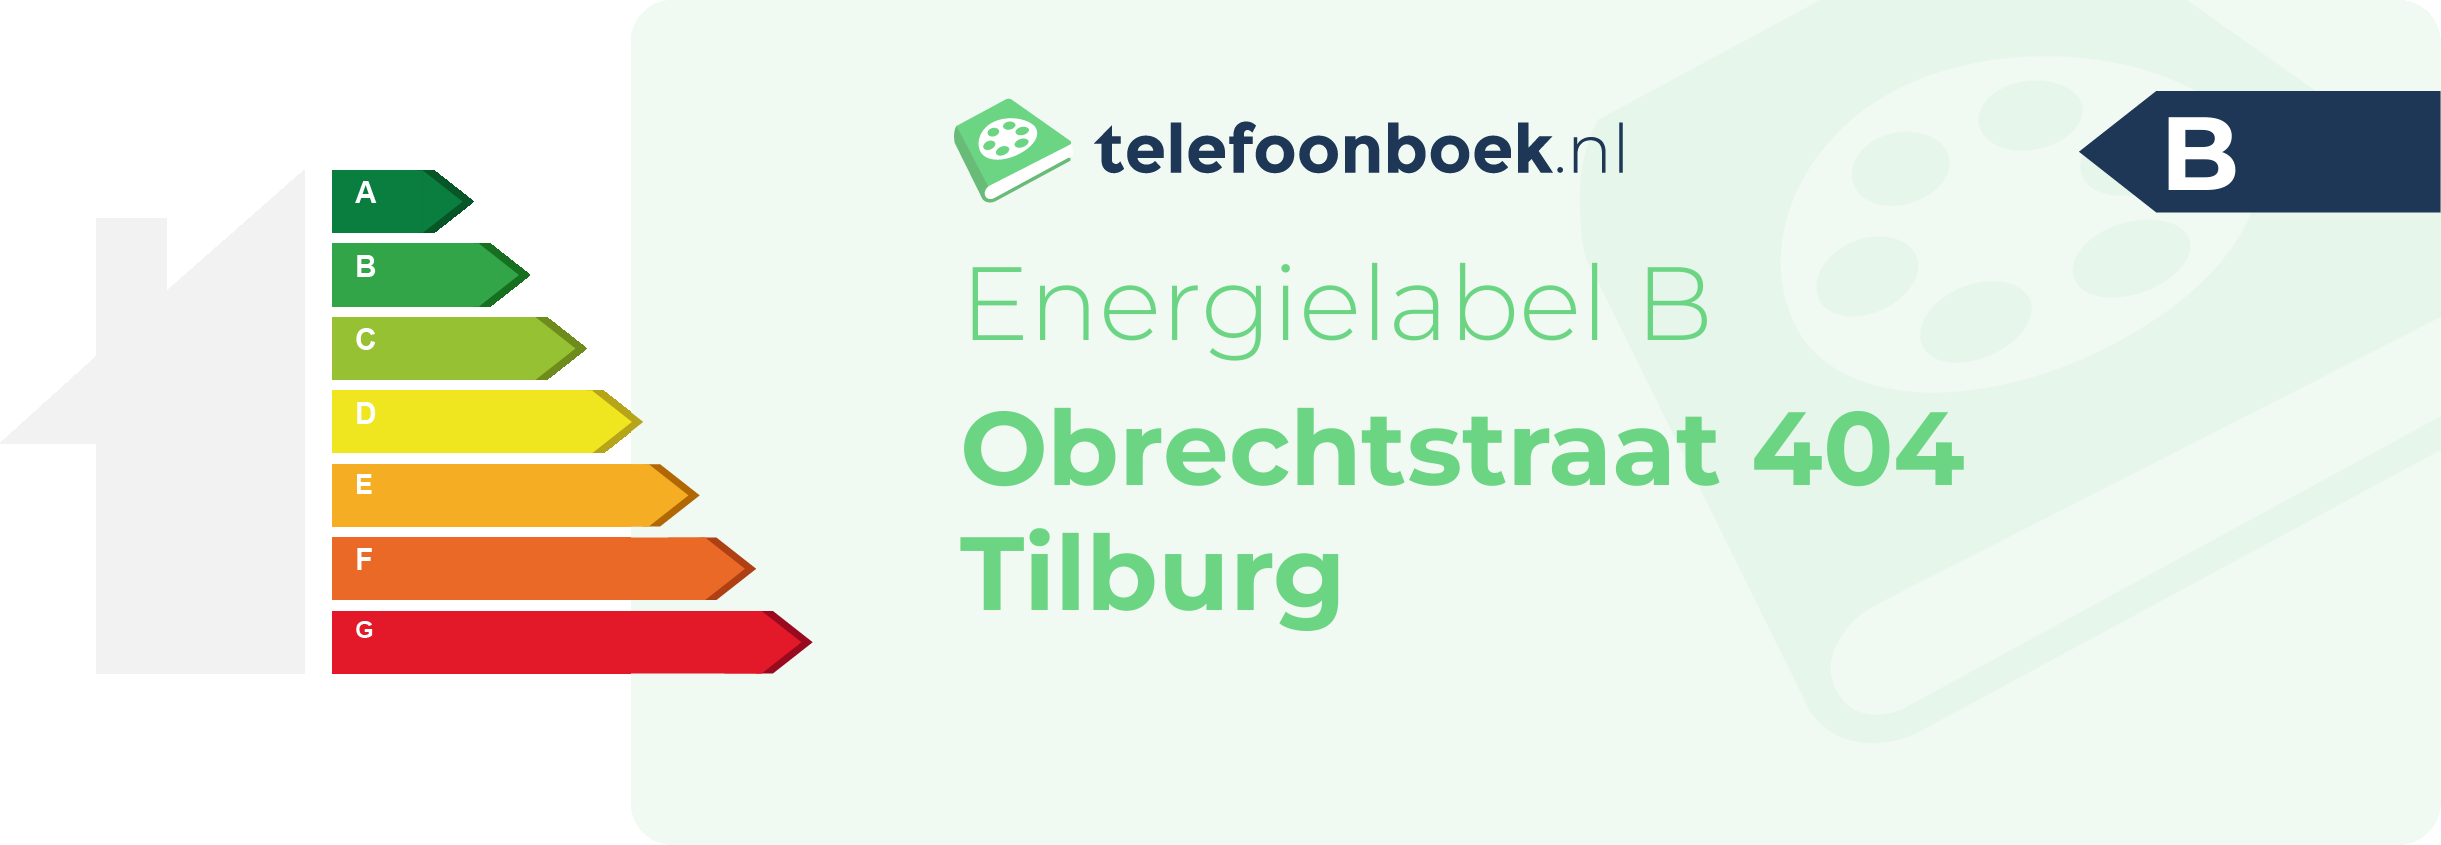 Energielabel Obrechtstraat 404 Tilburg